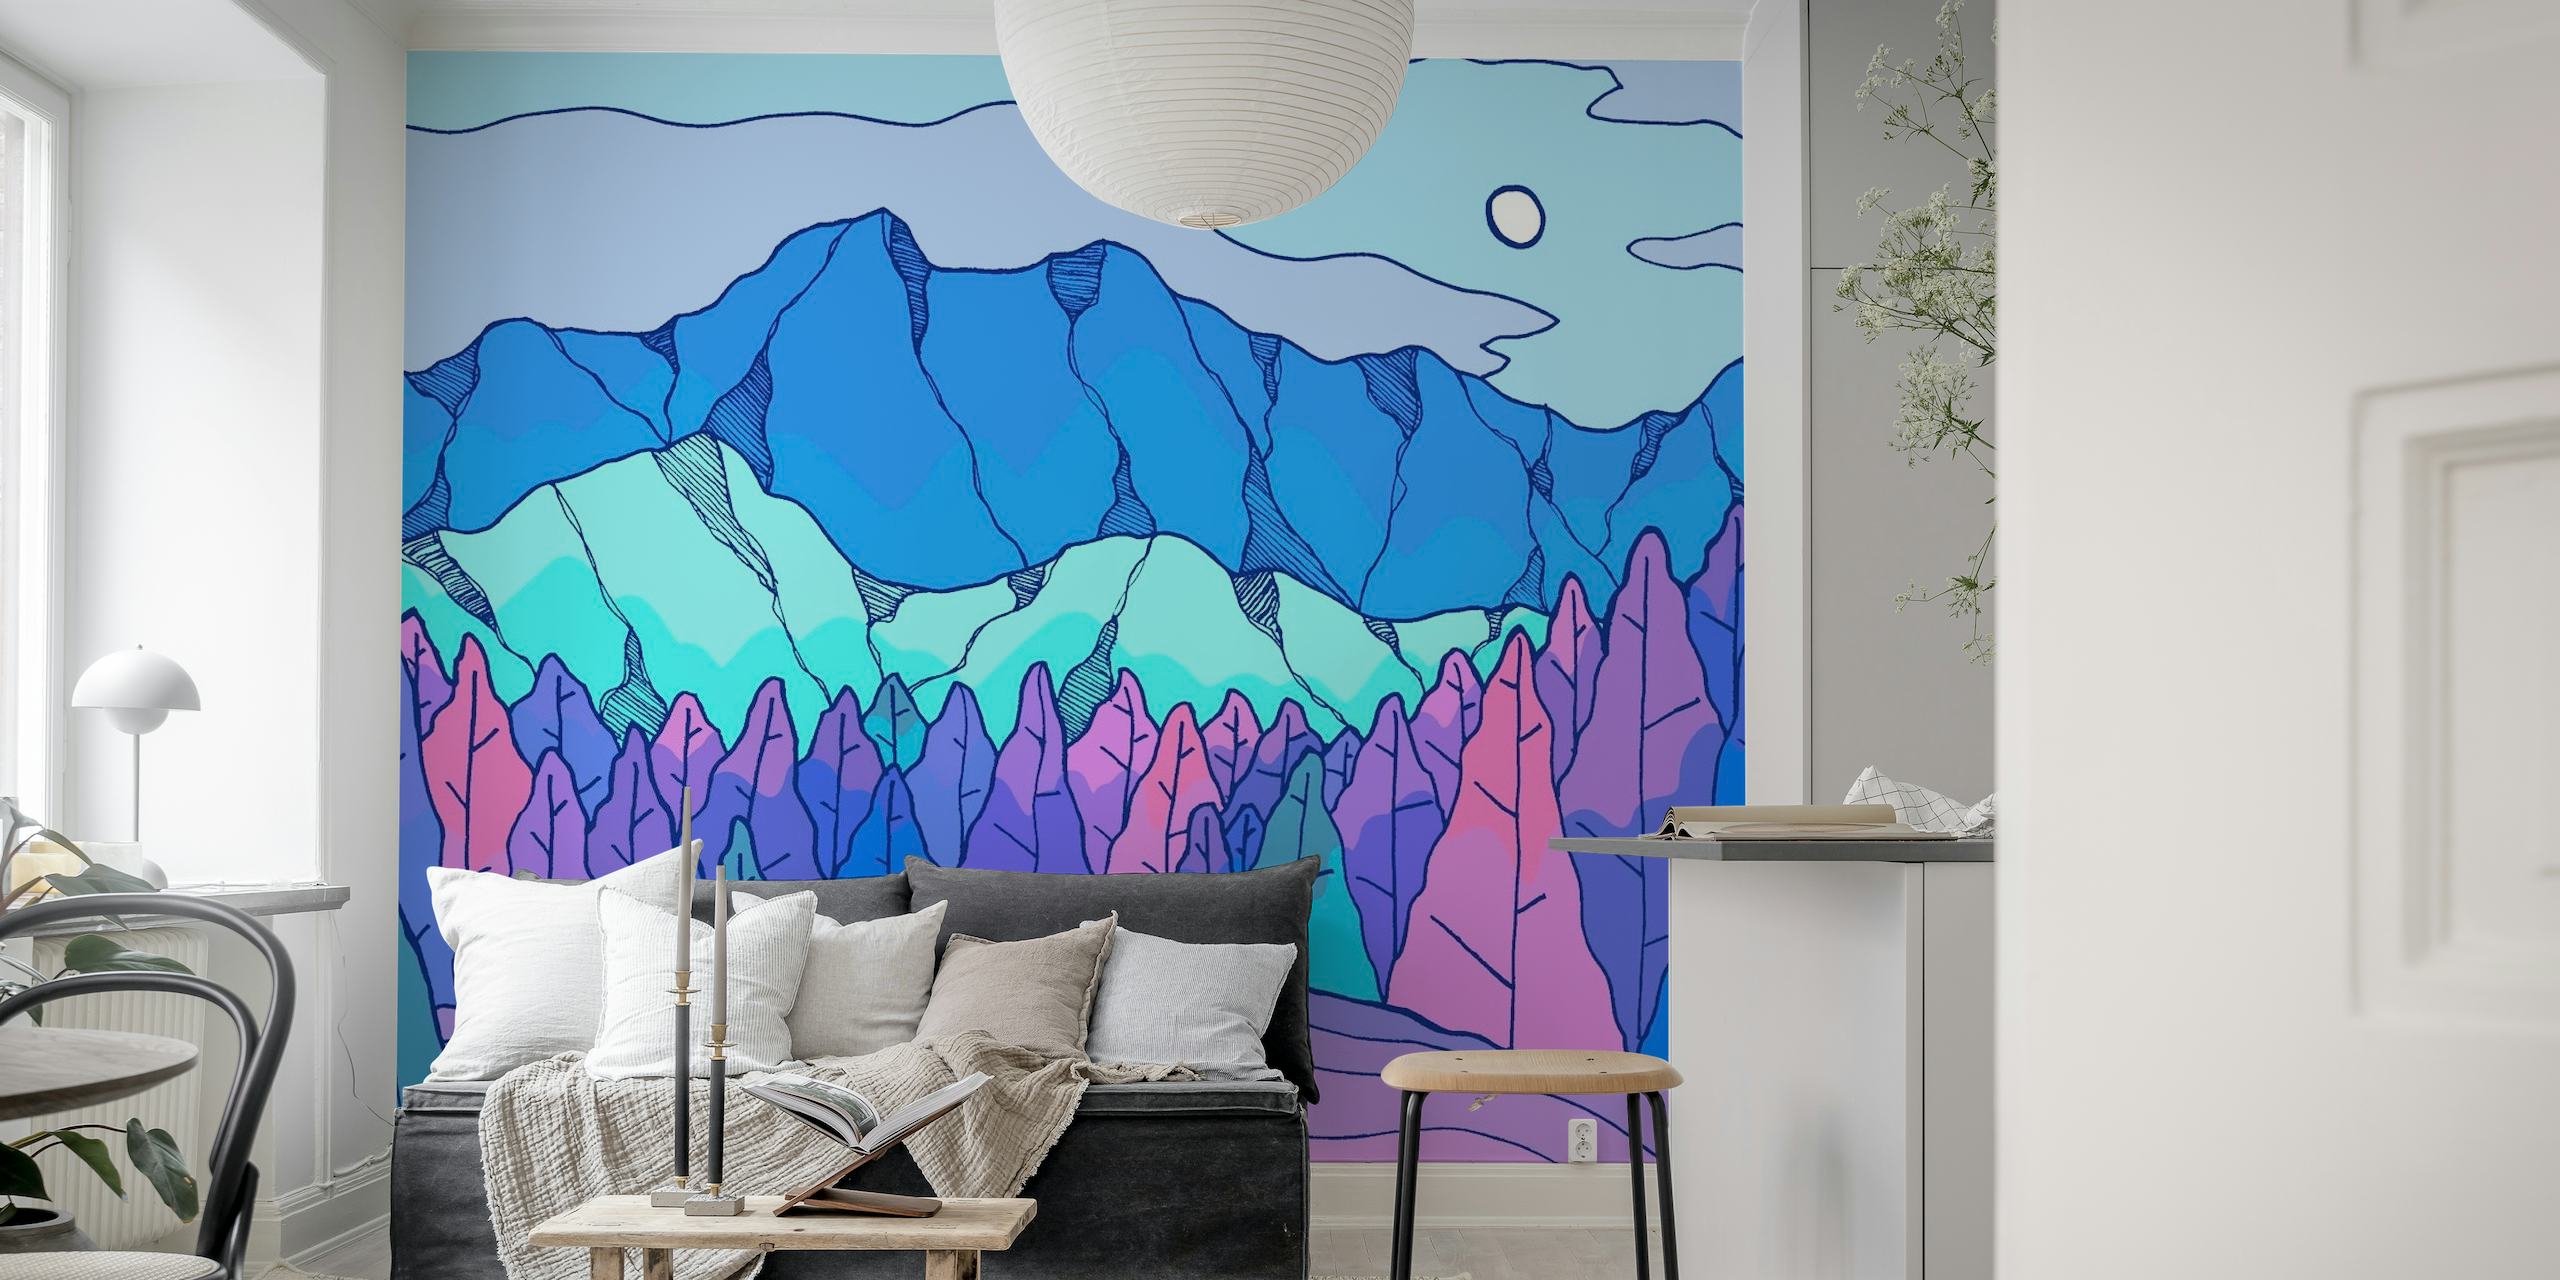 Stilizirana rijeka neonske boje koja teče kroz geometrijski planinski krajolik ispod blijedog mjesečevog zidnog murala